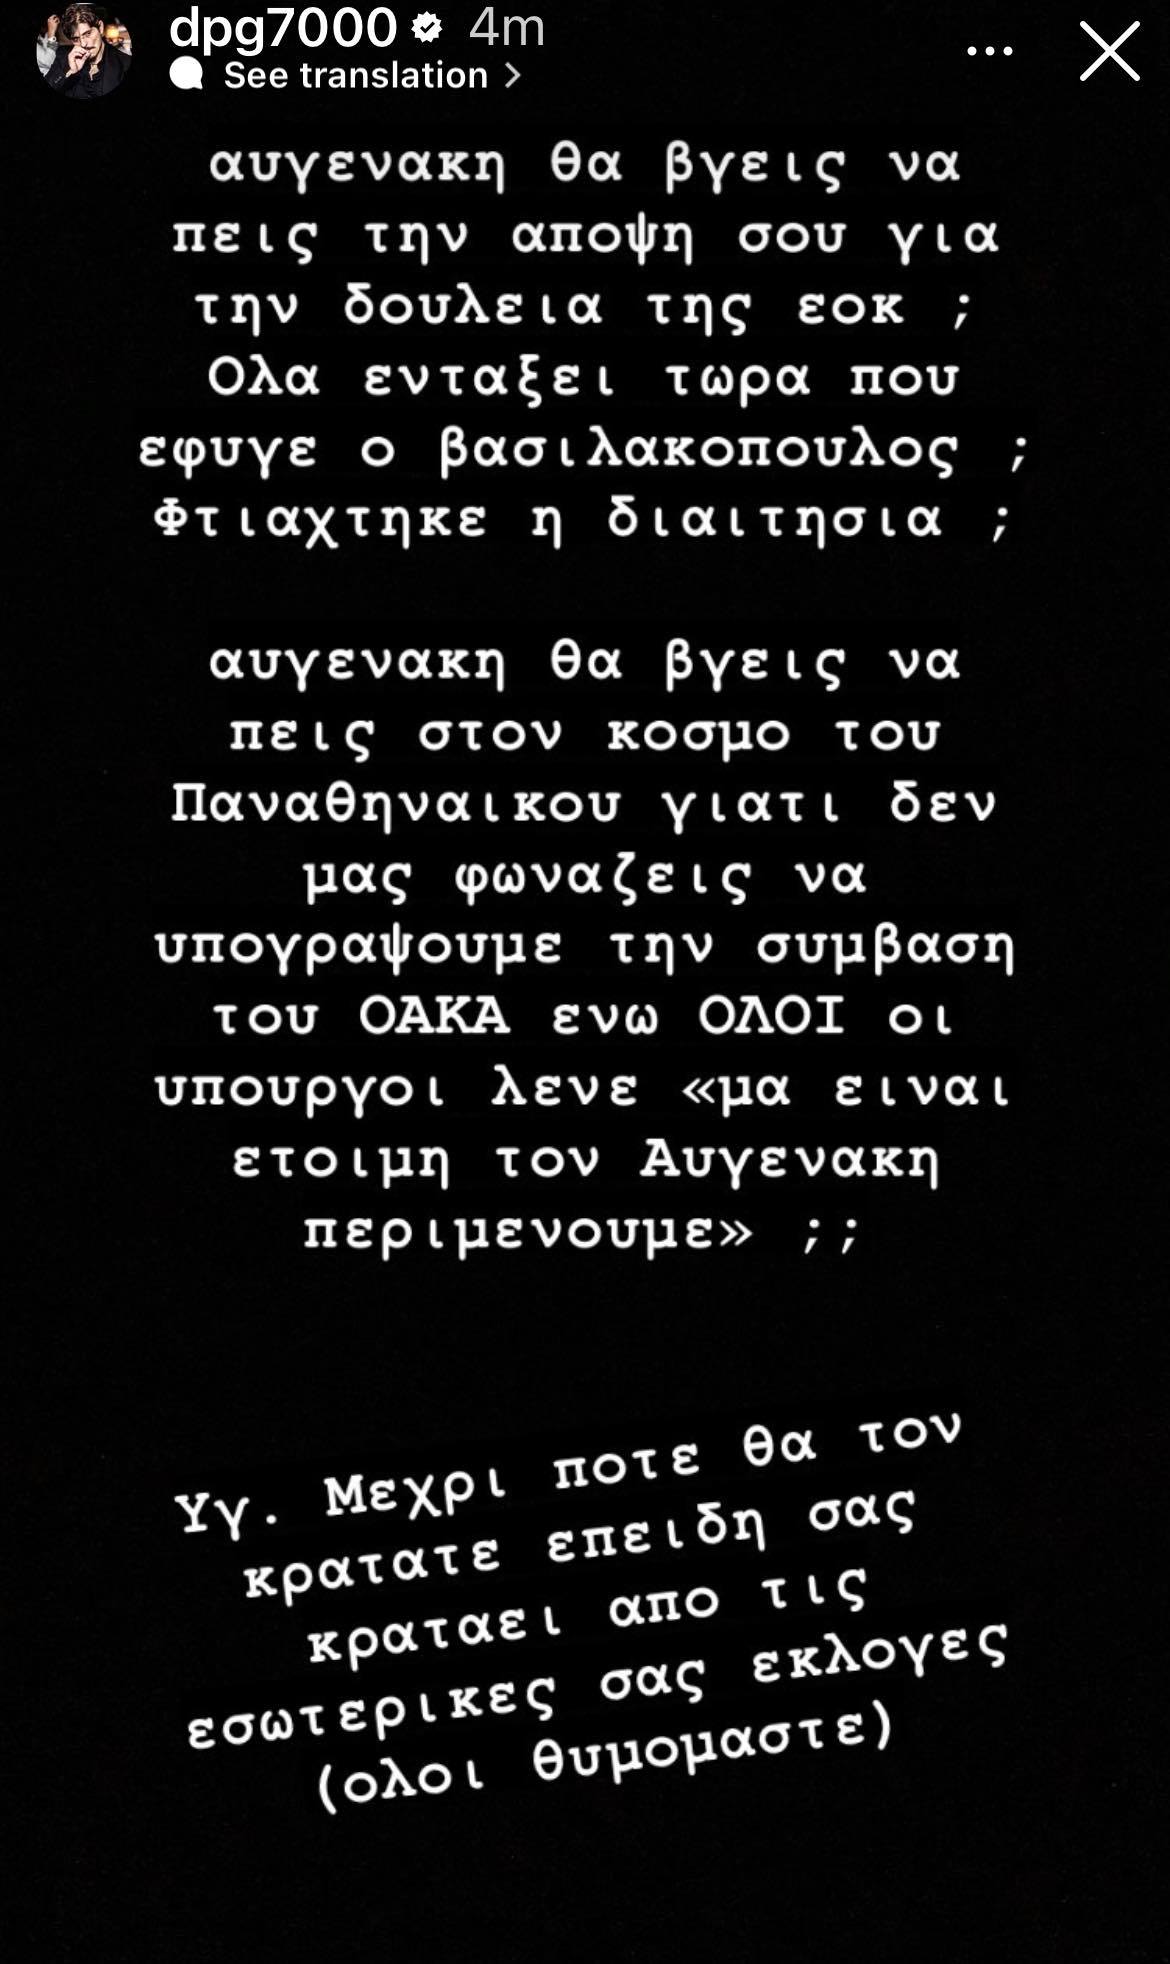 dpg7000 Δημήτρης Γιαννακόπουλος Παναθηναϊκός Ολυμπιακός